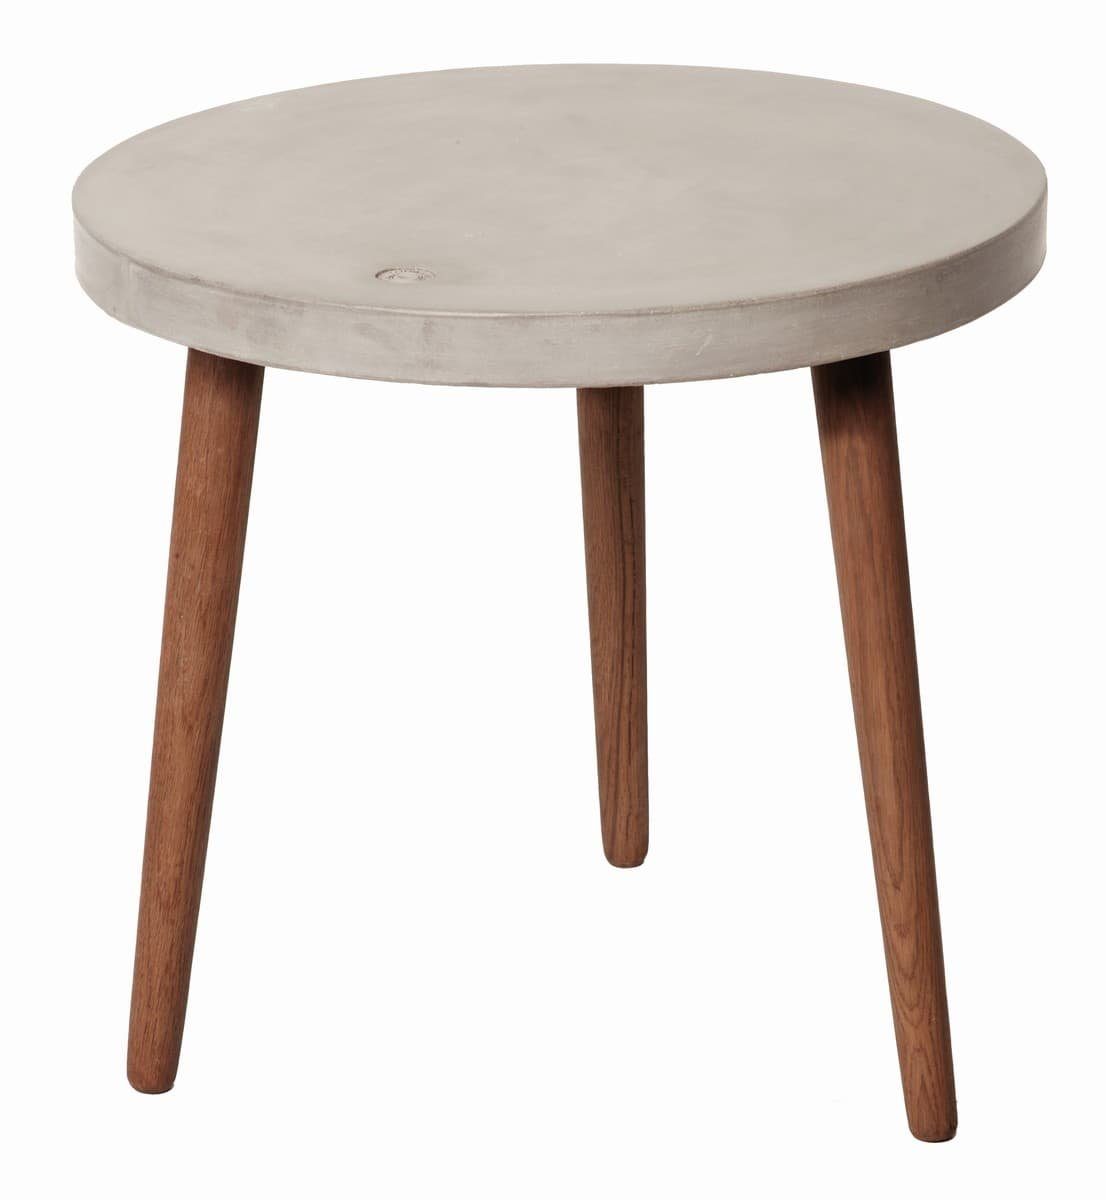 TOM TAILOR Couchtisch 60 Beton Nussbaum 09984-13 Tischplatte grau, Beine x 60 cm farbig